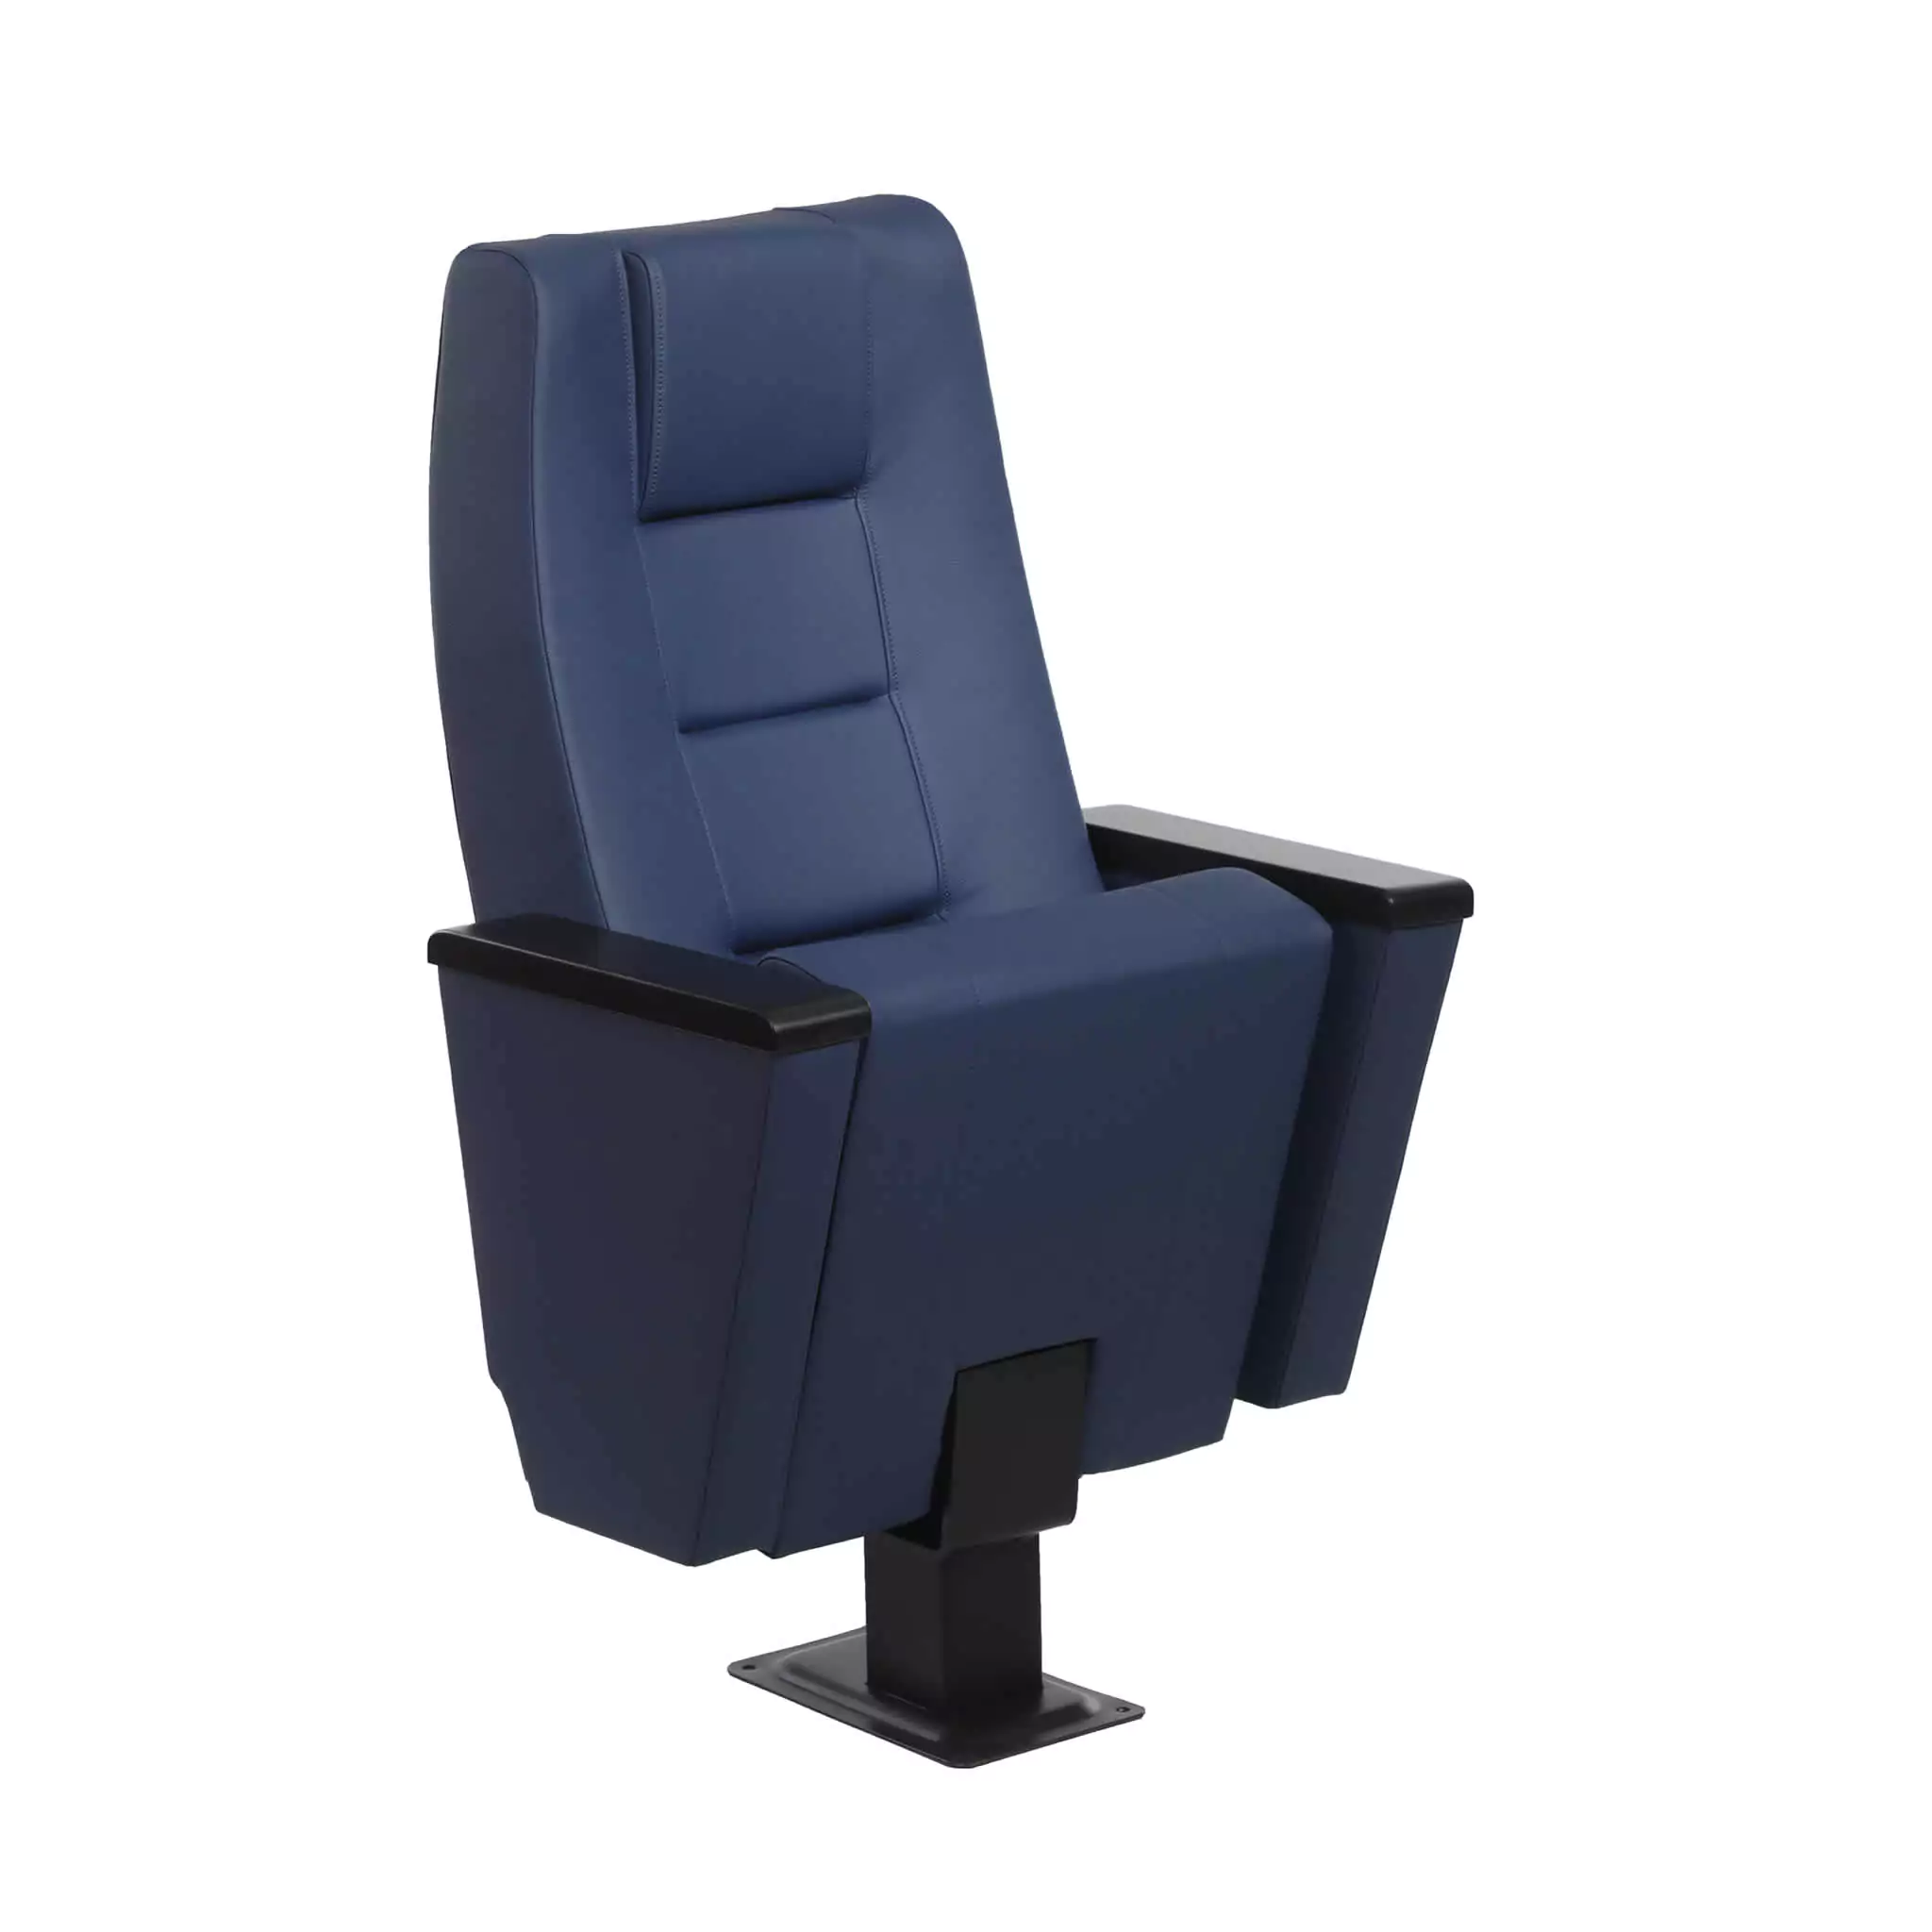 Seat Model: AQUAMARINE 01 Image